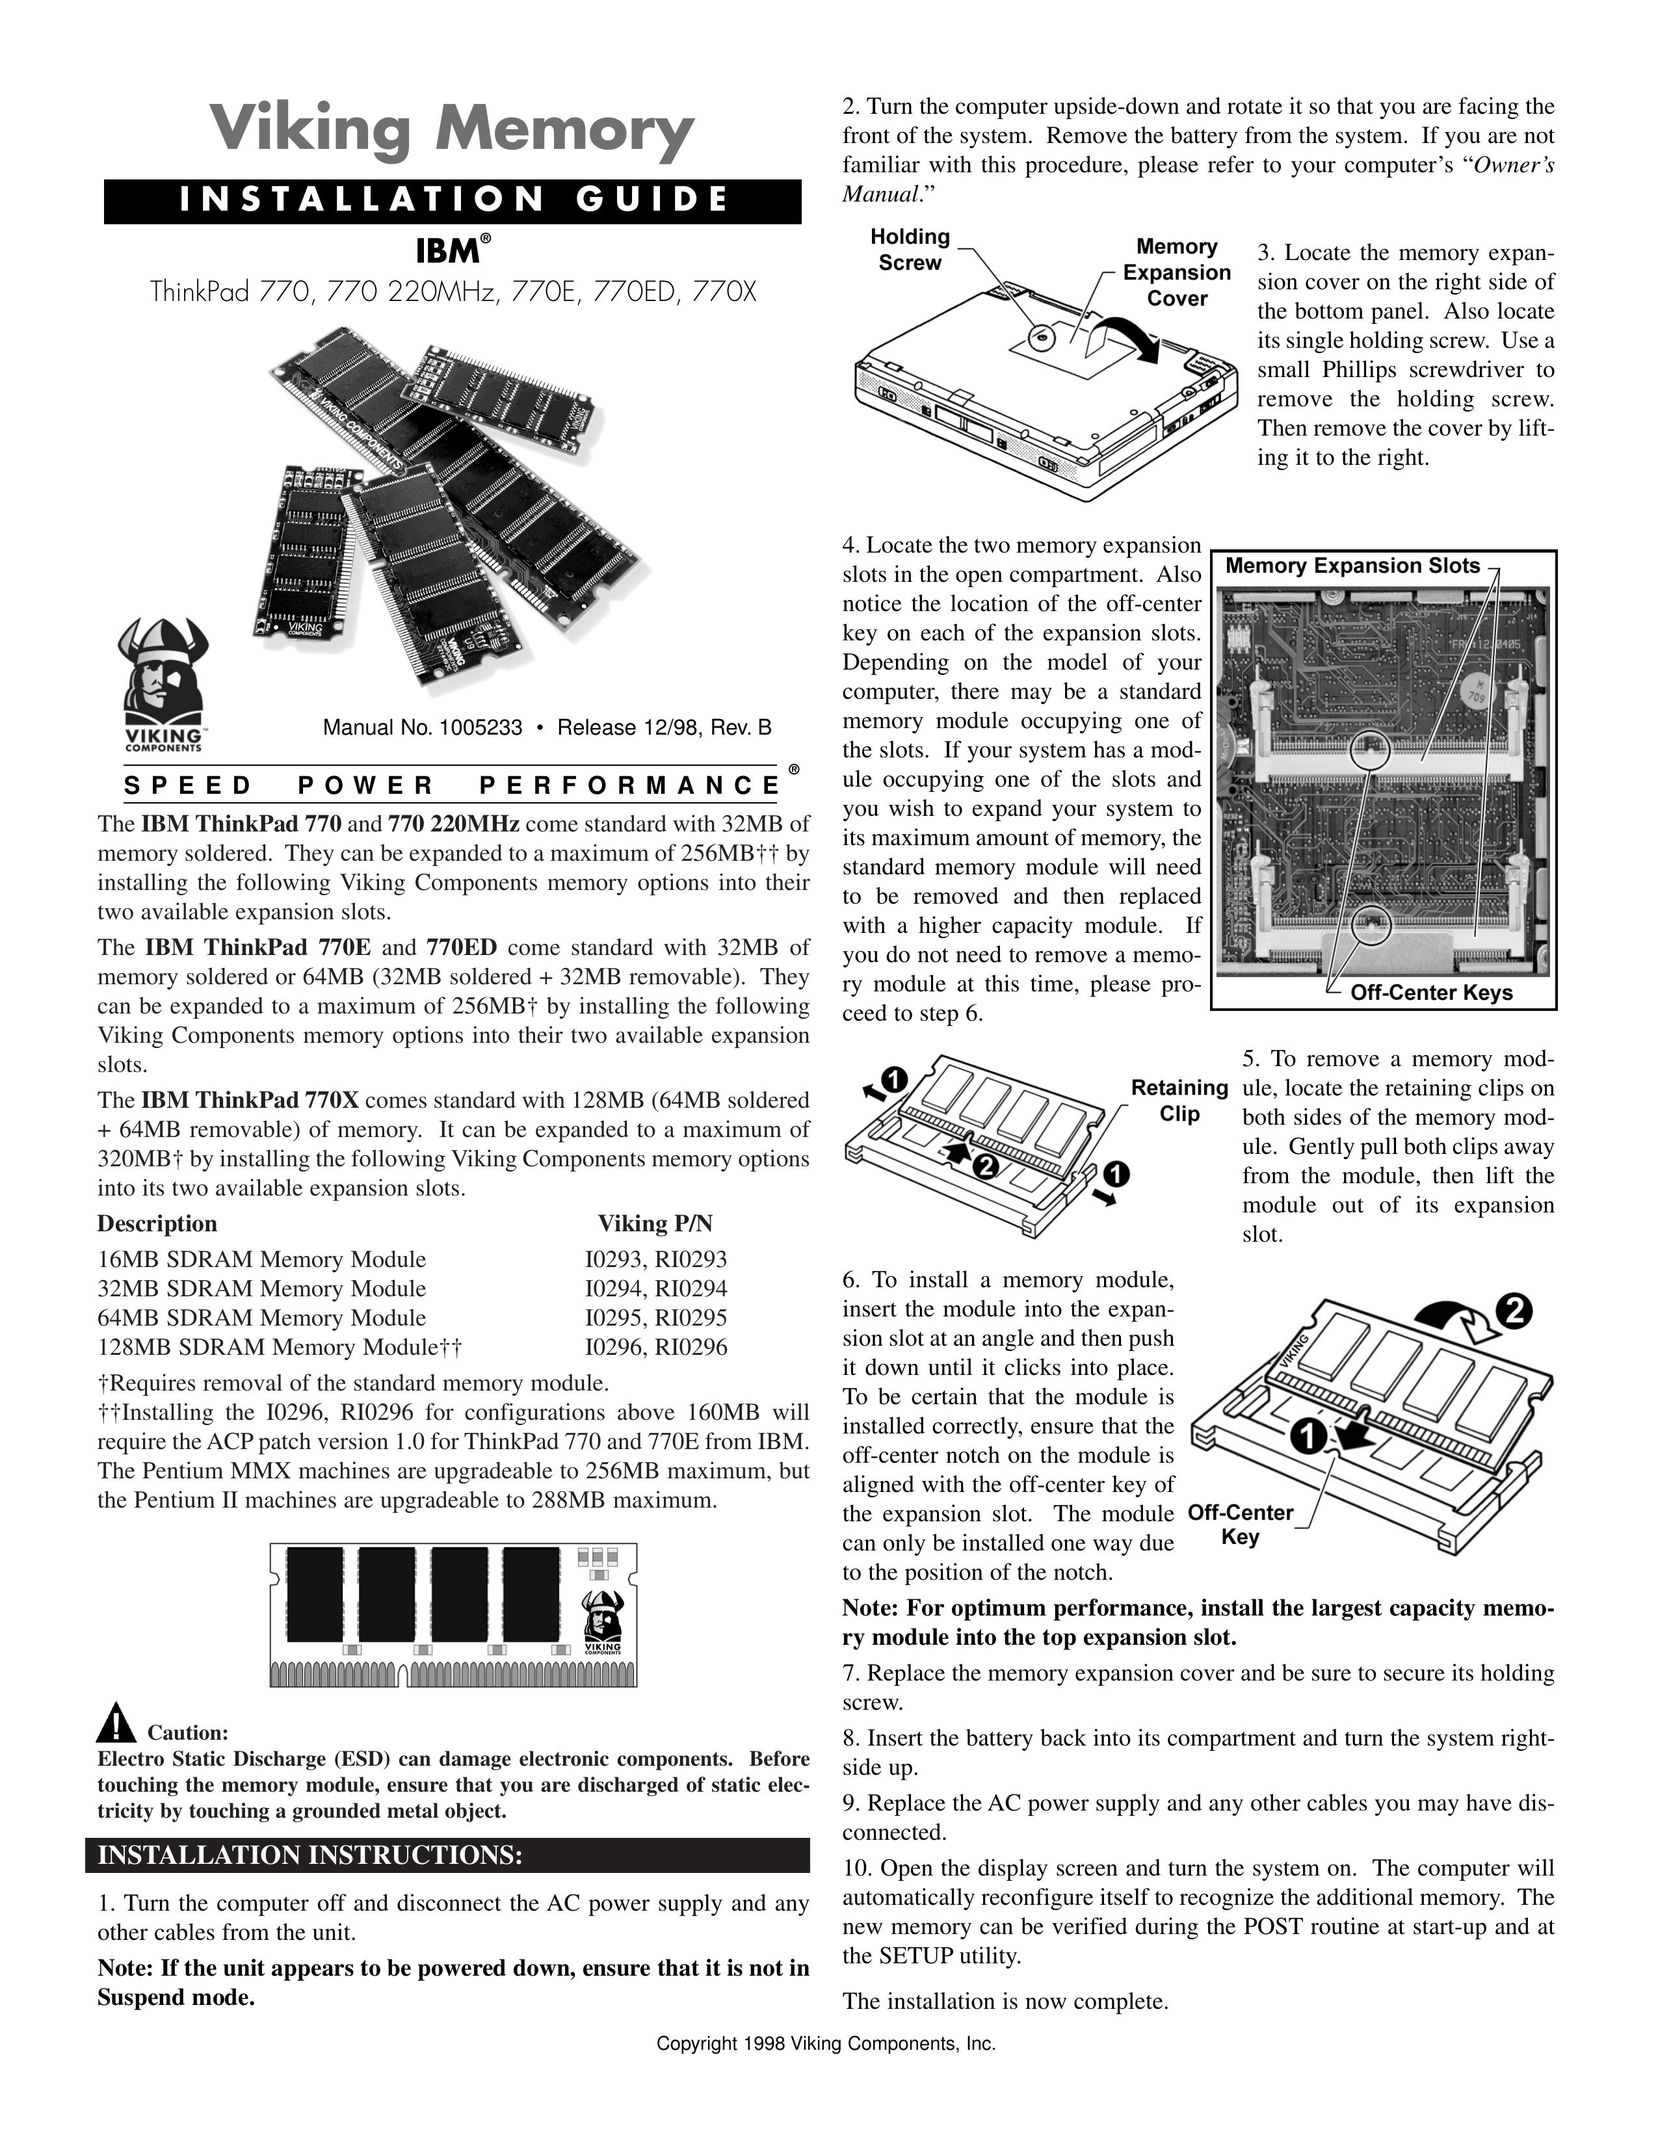 Viking 770 Computer Hardware User Manual